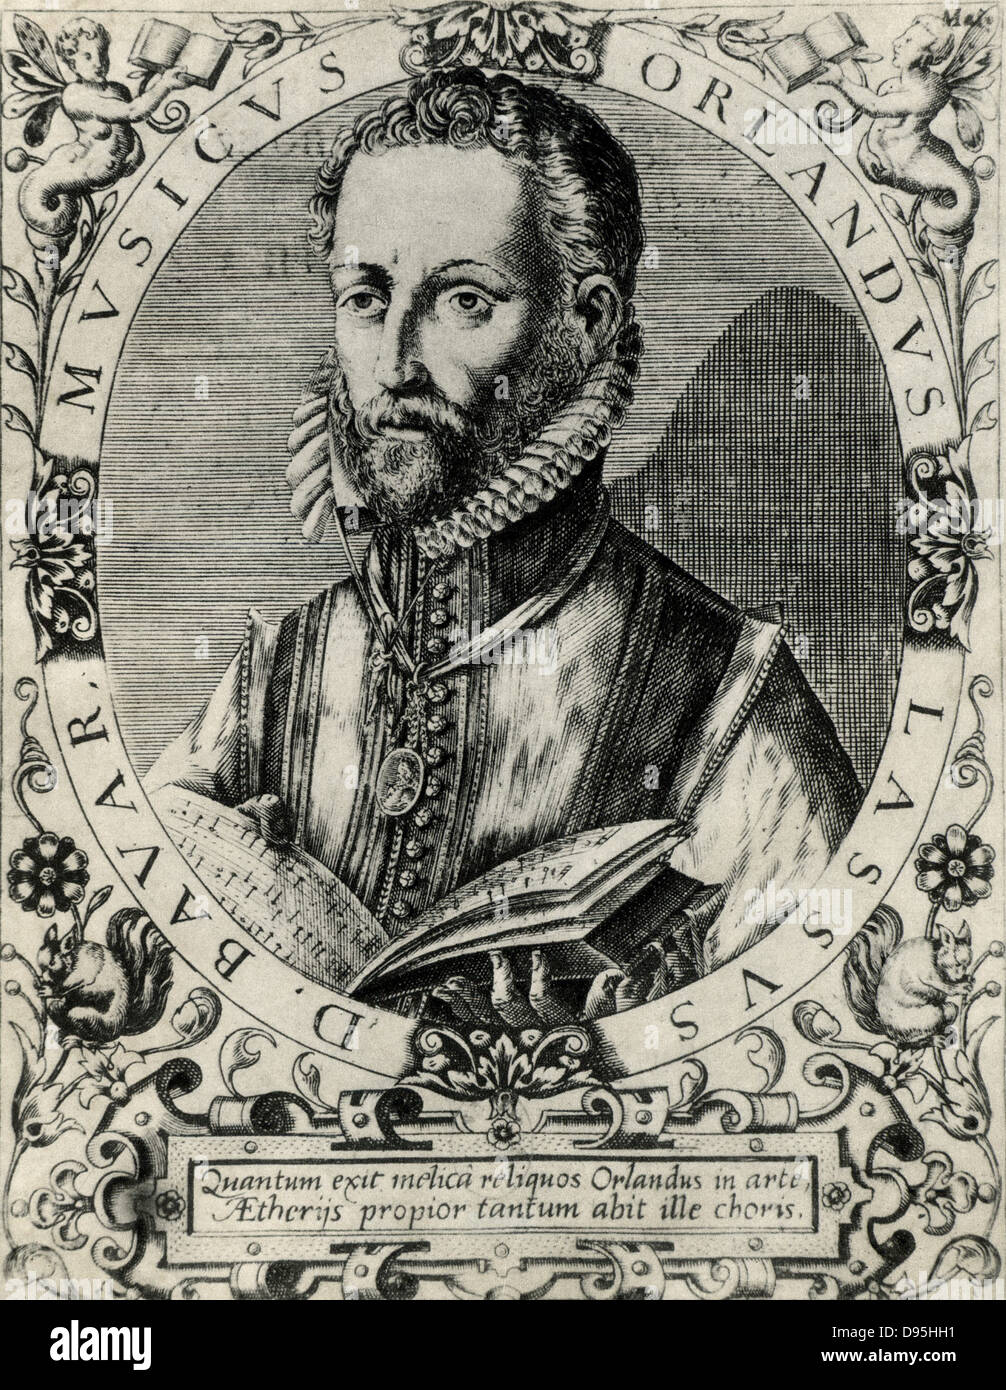 Orlando Lassus (Orlando di Lasso - c1532-1594) compositeur et musicien depuis les Pays-Bas. Actif en Italie, l'Angleterre et la France, il a composé deux œuvres sacrées et profanes. Anoblie par Maximilien II en 1570. À partir d'une gravure sur cuivre. Banque D'Images